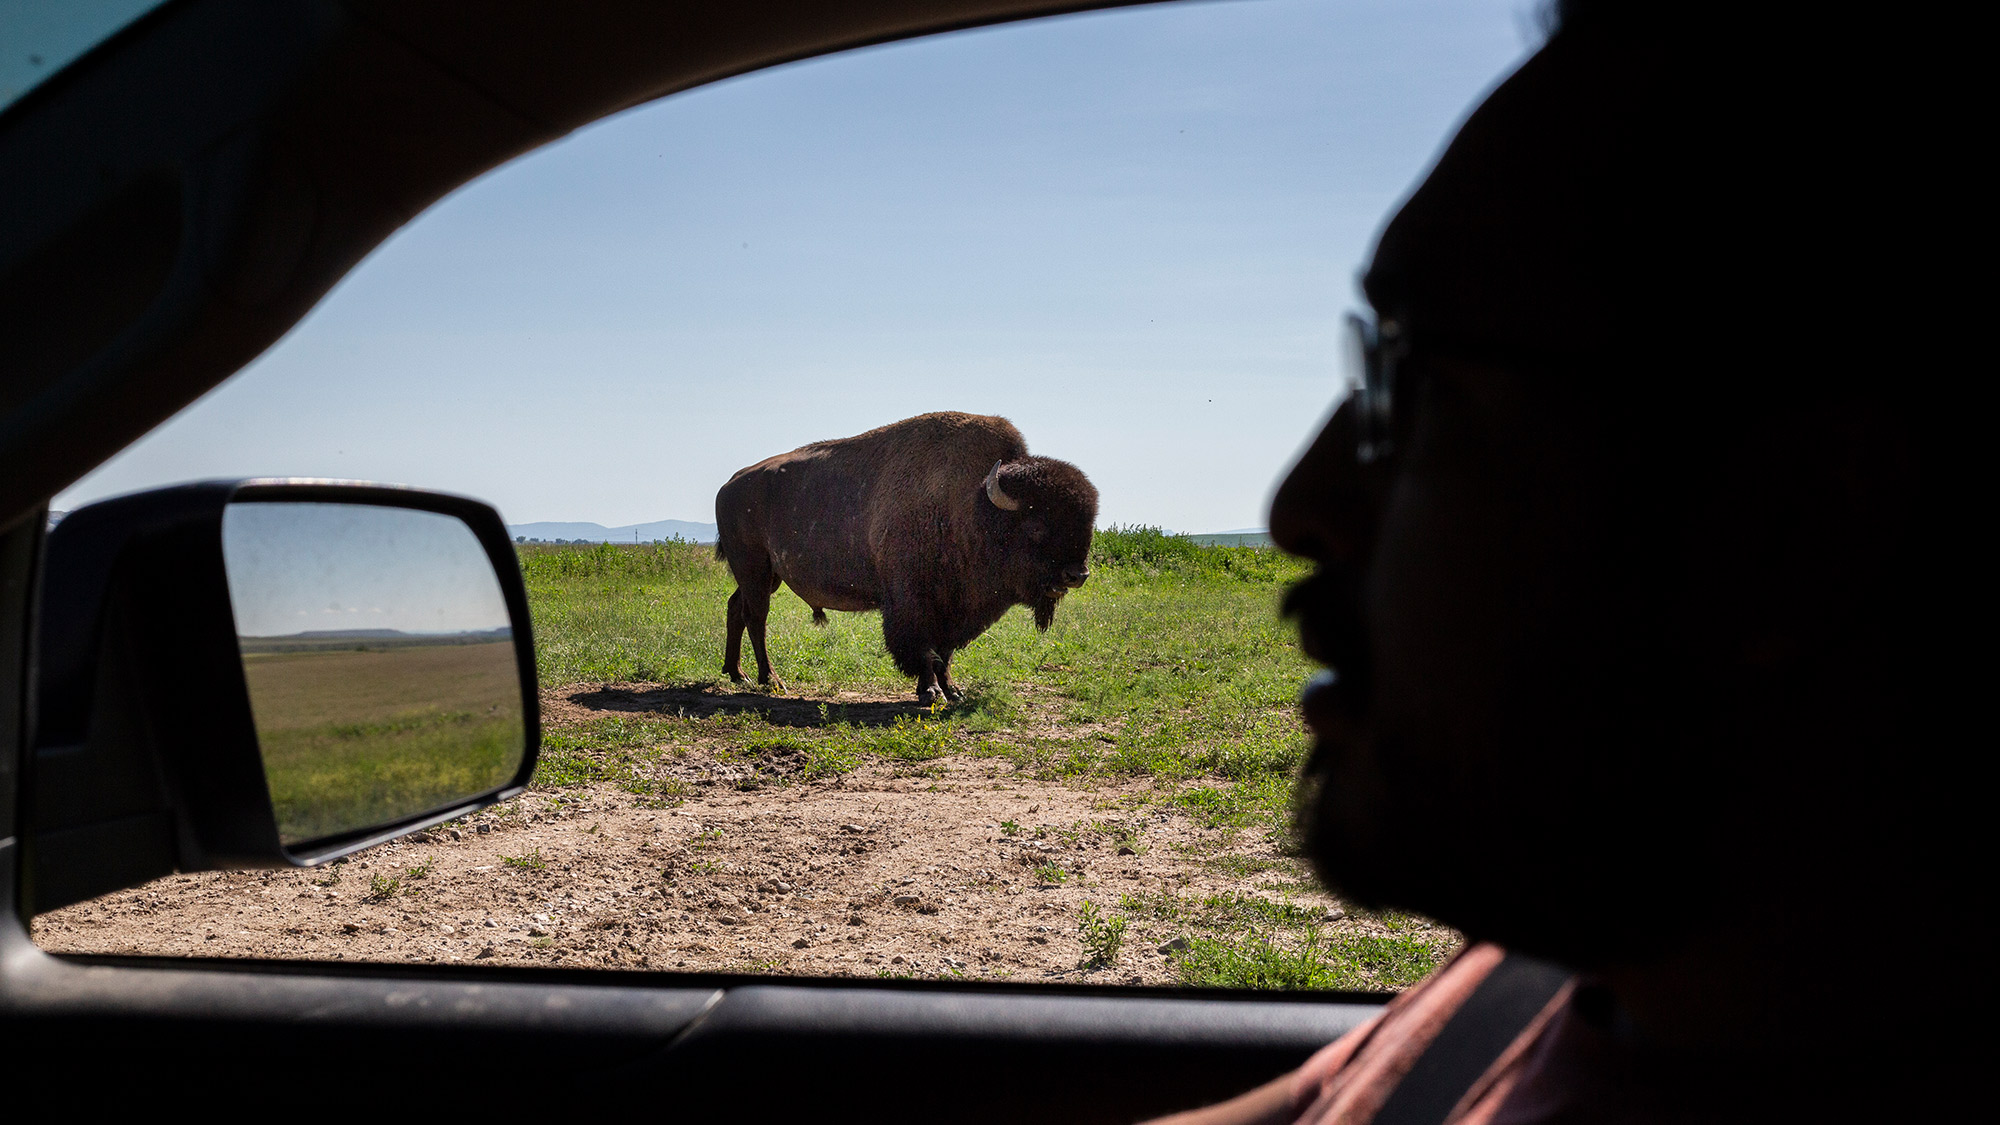 buffalo on prairie as seen through car window